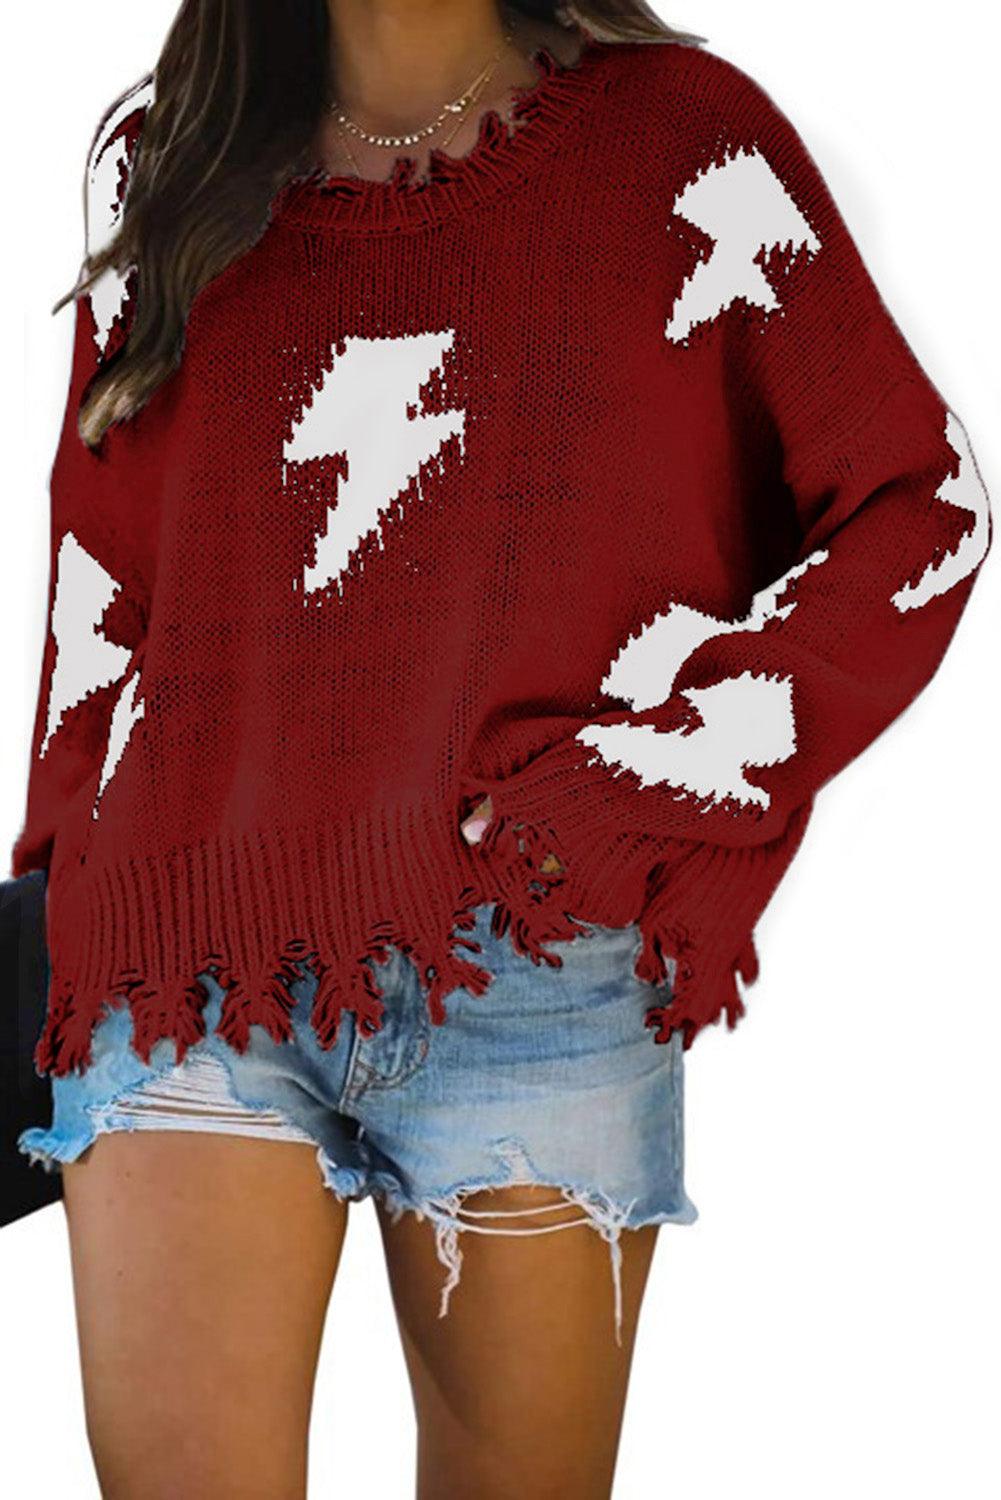 Khaki Distressed Knit Bolt Sweater - L & M Kee, LLC